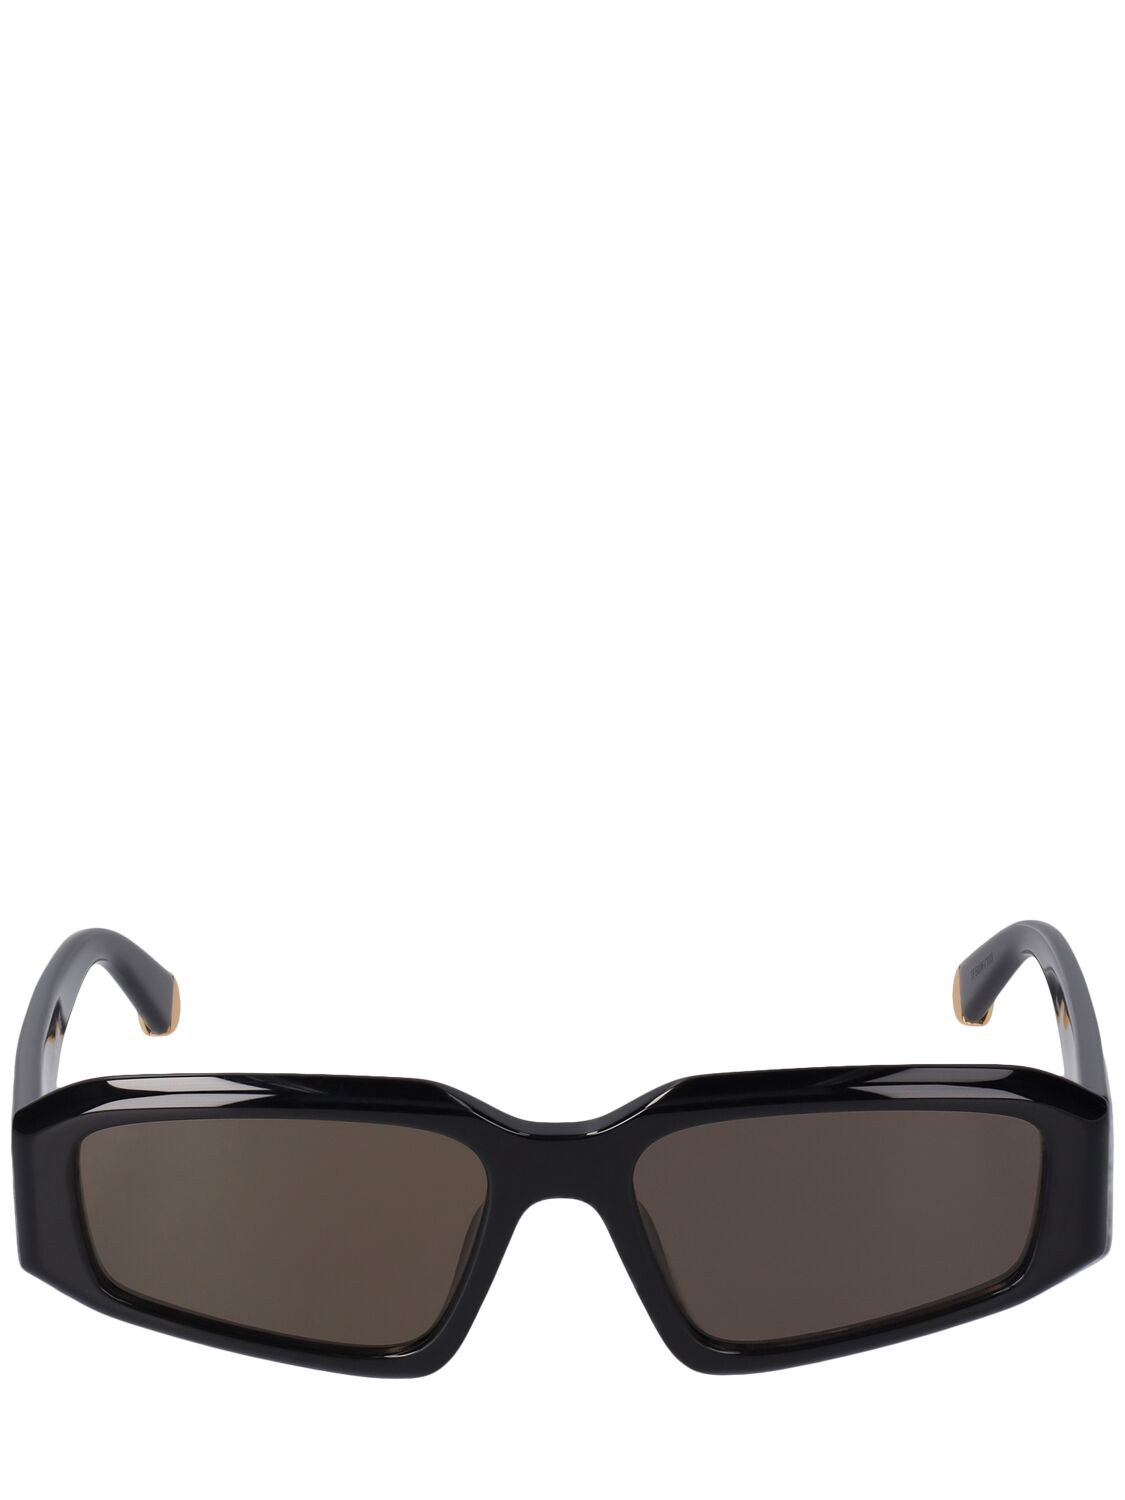 Stella Mccartney Squared Acetate Sunglasses In Black